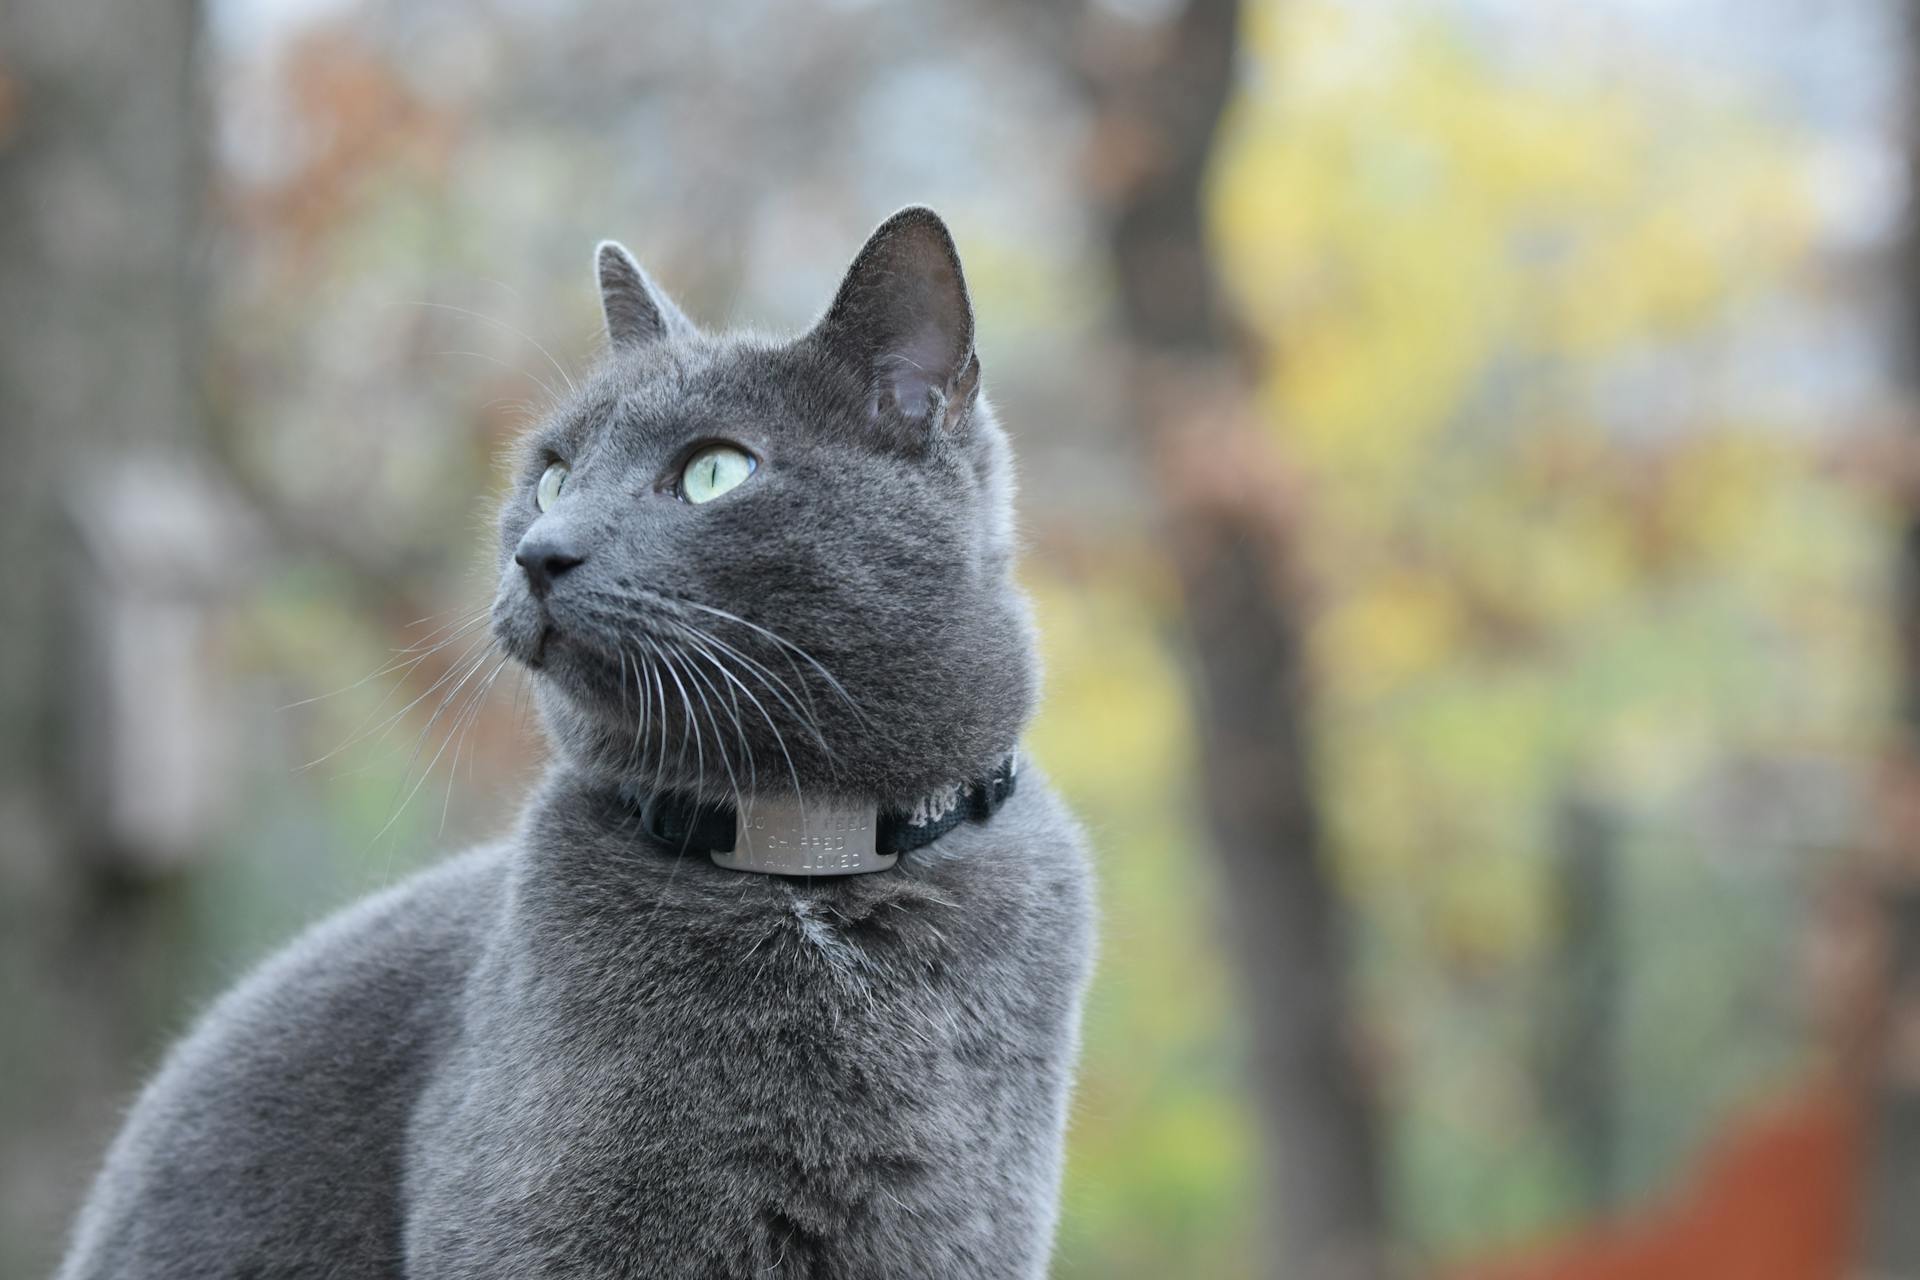 A Russian blue cat wearing a collar